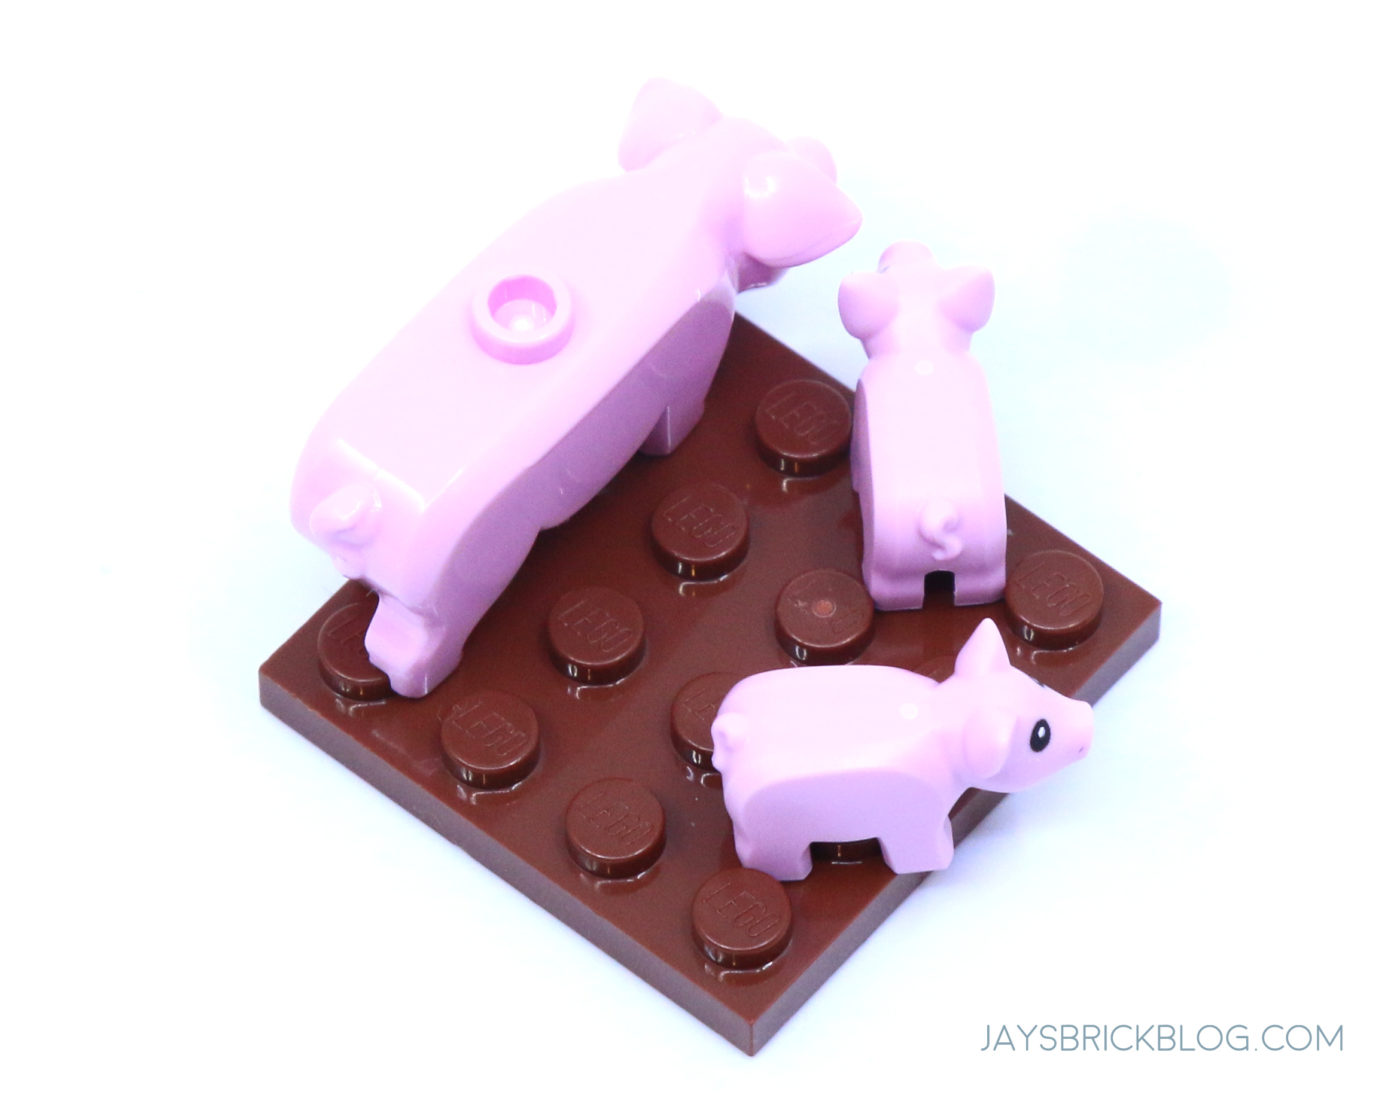 Review: LEGO 60346 Barn & Farm Animals - Jay's Brick Blog